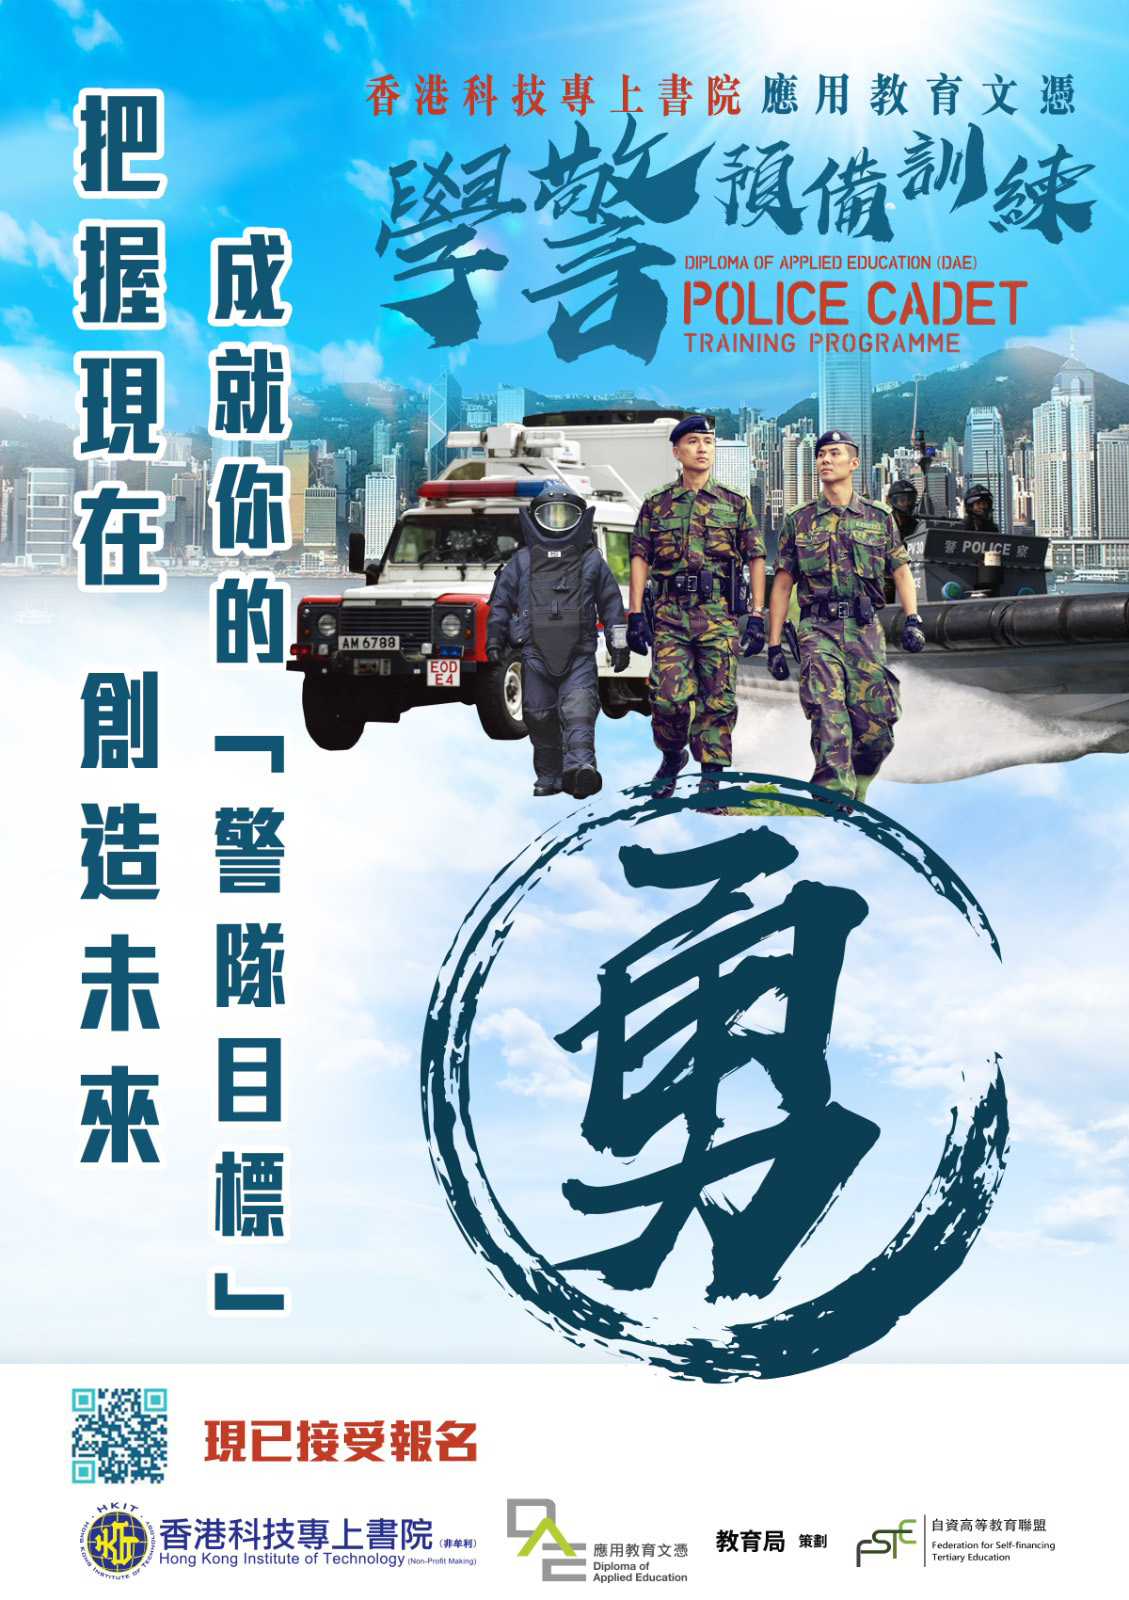 「警察學院」、「警察招募組」與「香港科技專上書院」合辦「應用教育文憑-學警預備訓練」課程